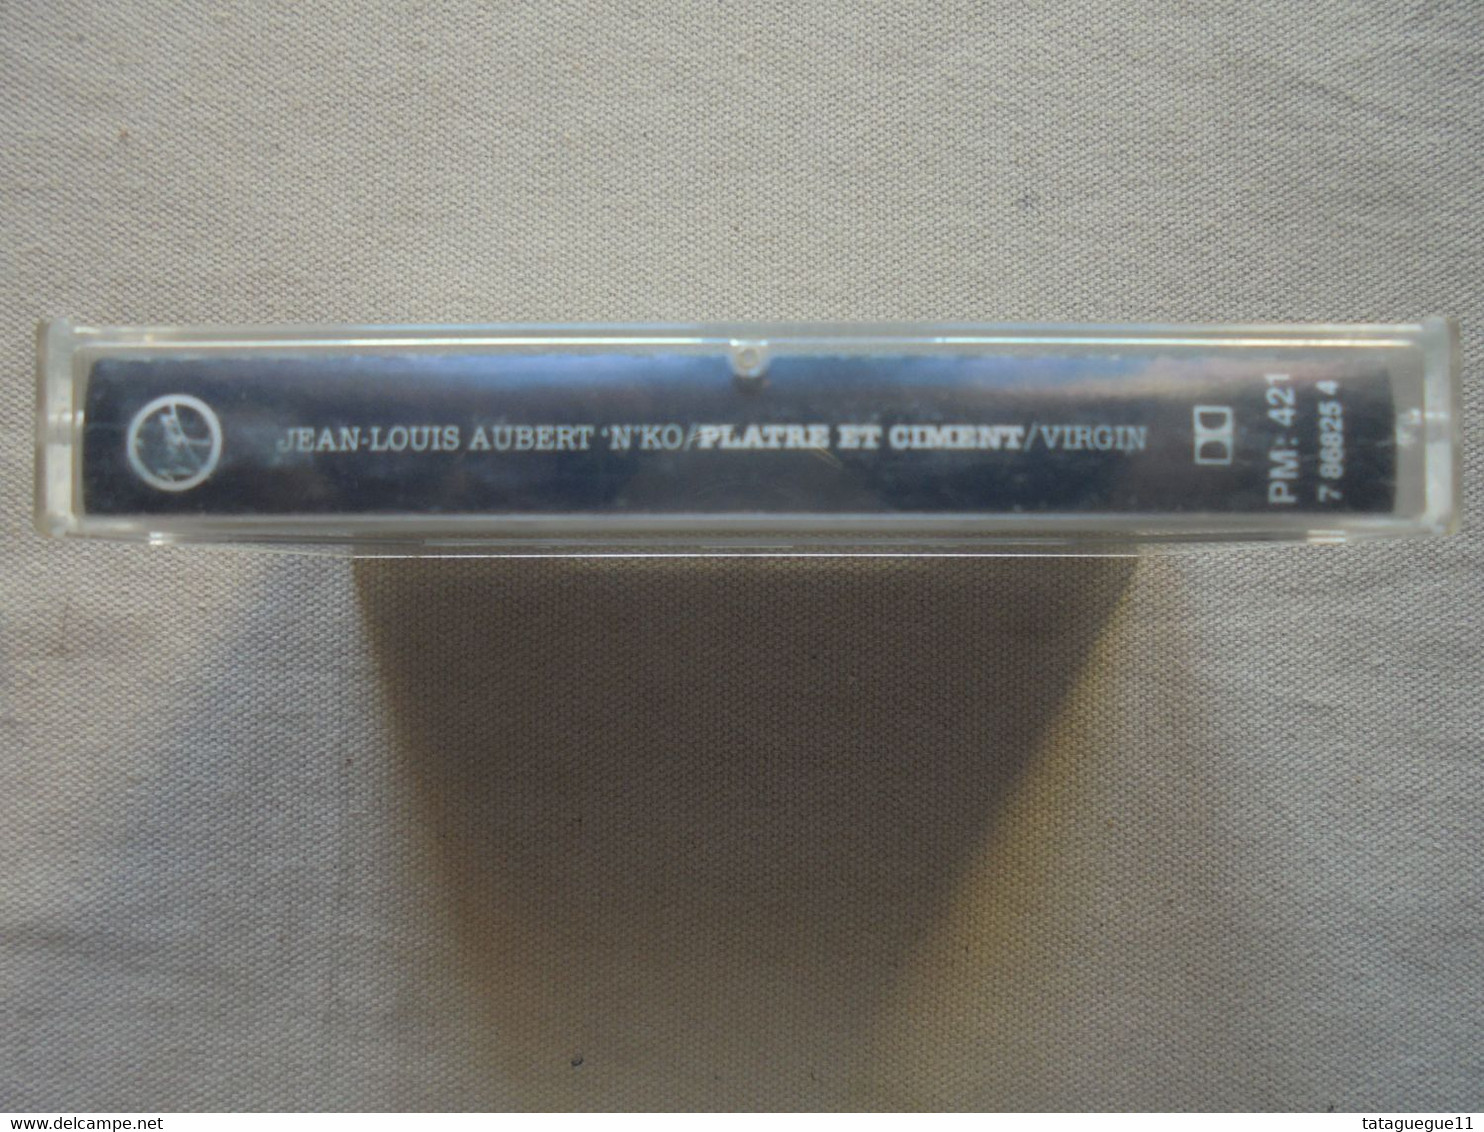 Cassette Audio - K7 - Jean-Louis Aubert 'n'Ko - Plâtre Et Ciment - La Loupe 1987 - Cassettes Audio